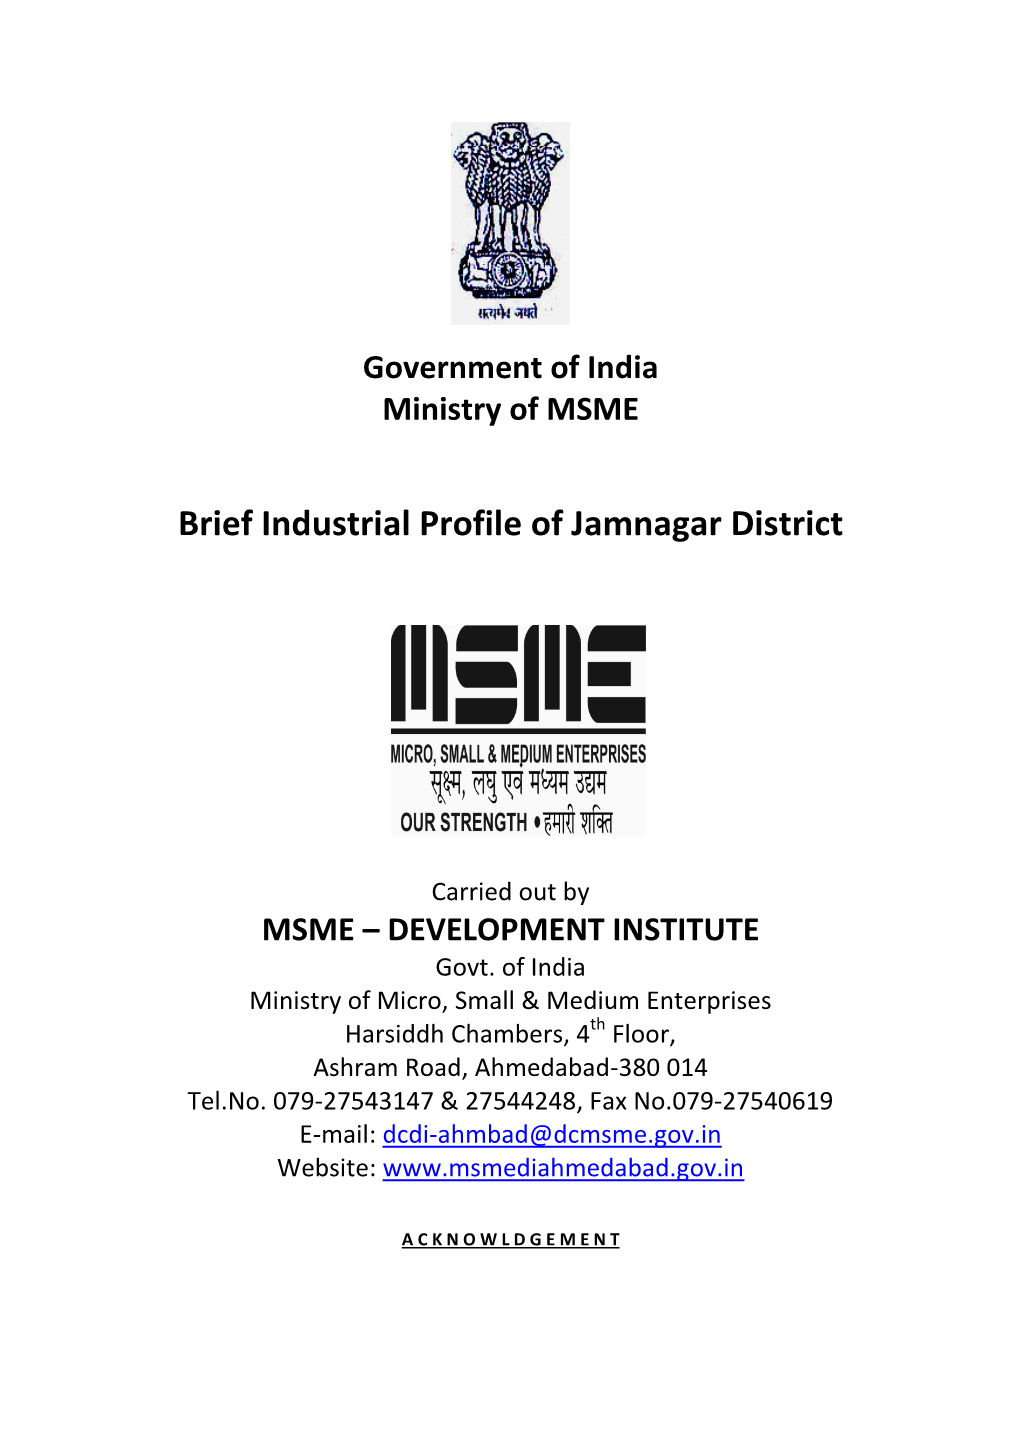 Brief Industrial Profile of Jamnagar District